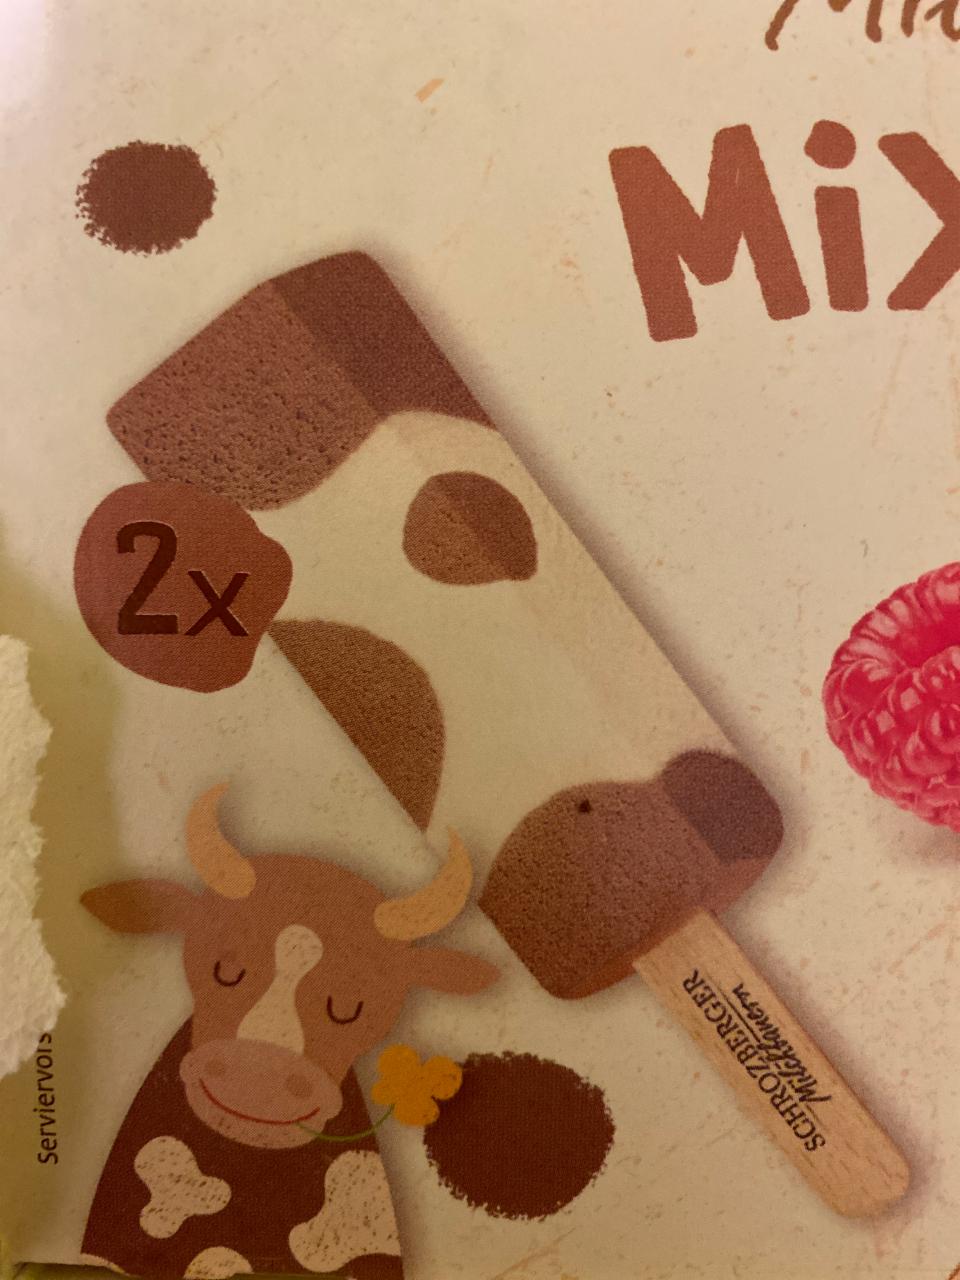 Фото - Mix-Box Bourbon Vanillemilcheis und Schokoladenmilcheis Schrozberger Milchbauern